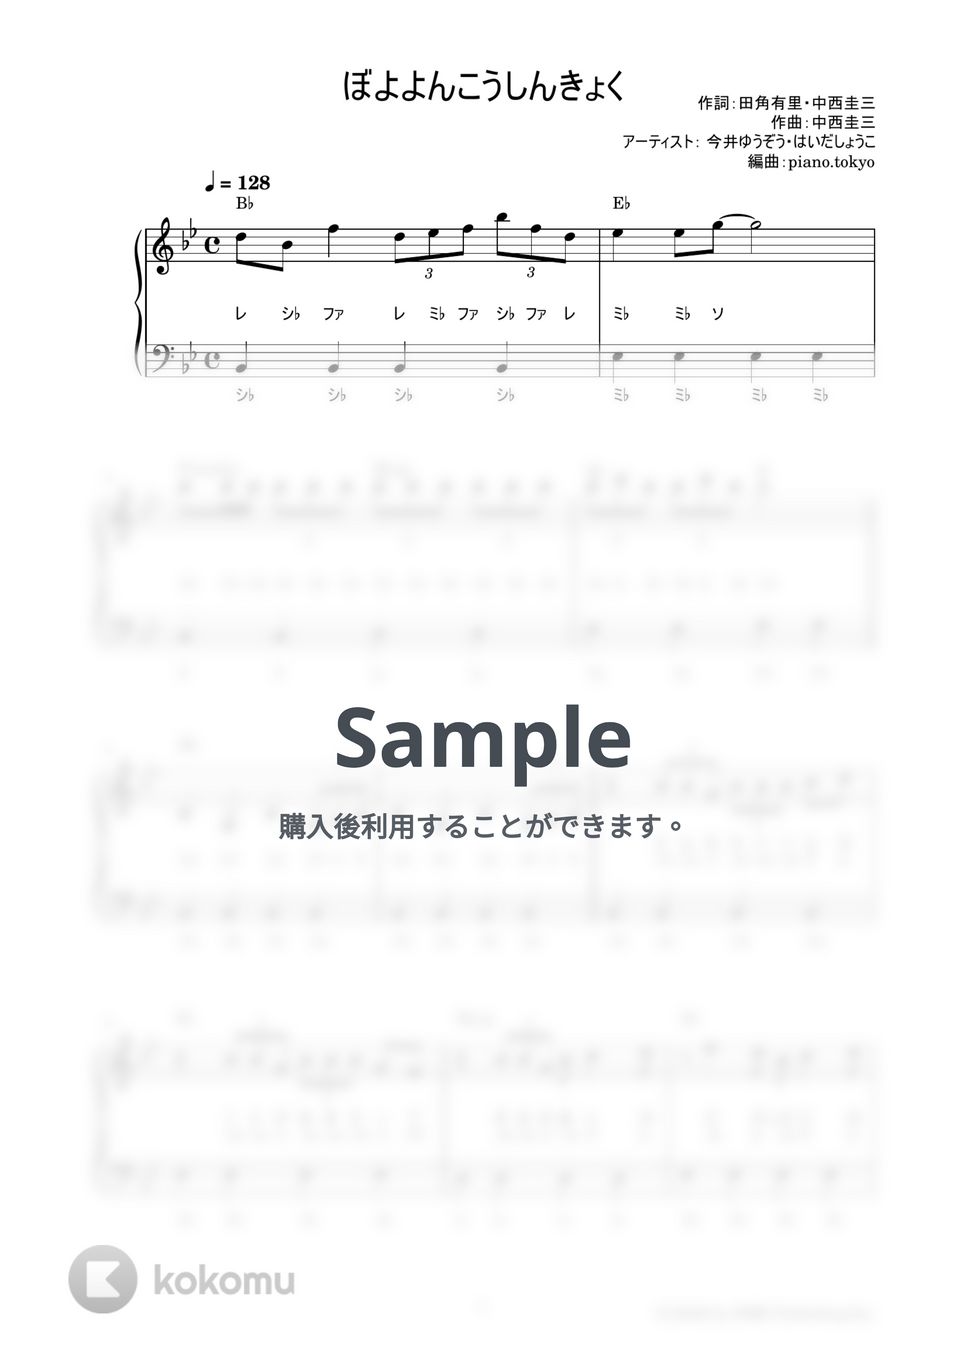 ぼよよんこうしんきょく (かんたん / 歌詞付き / ドレミ付き / 初心者) by piano.tokyo